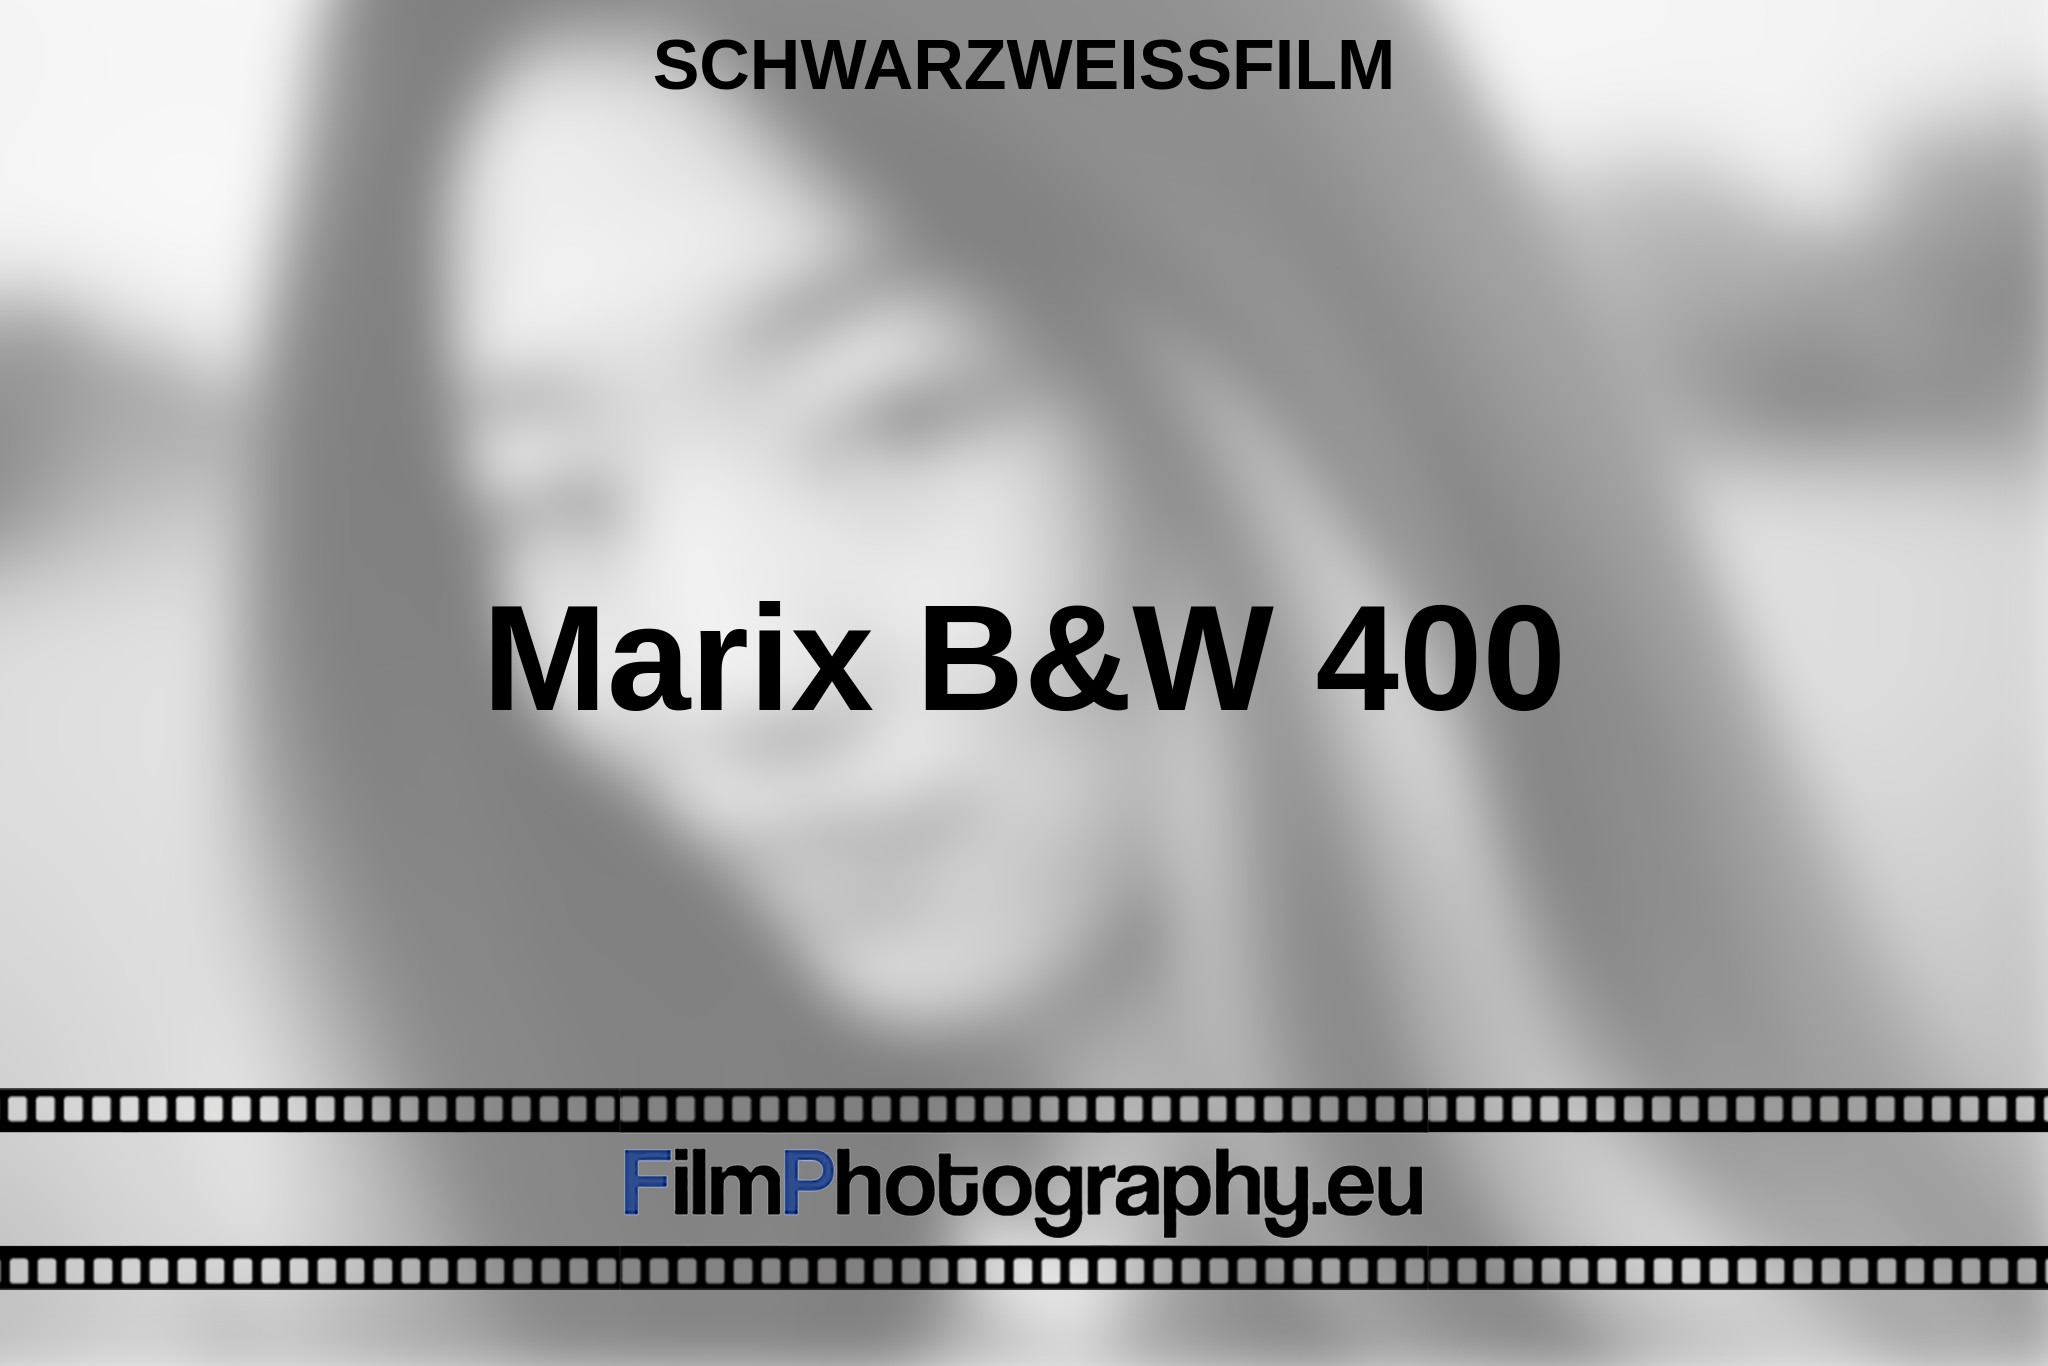 marix-b-w-400-schwarzweißfilm-bnv.jpg